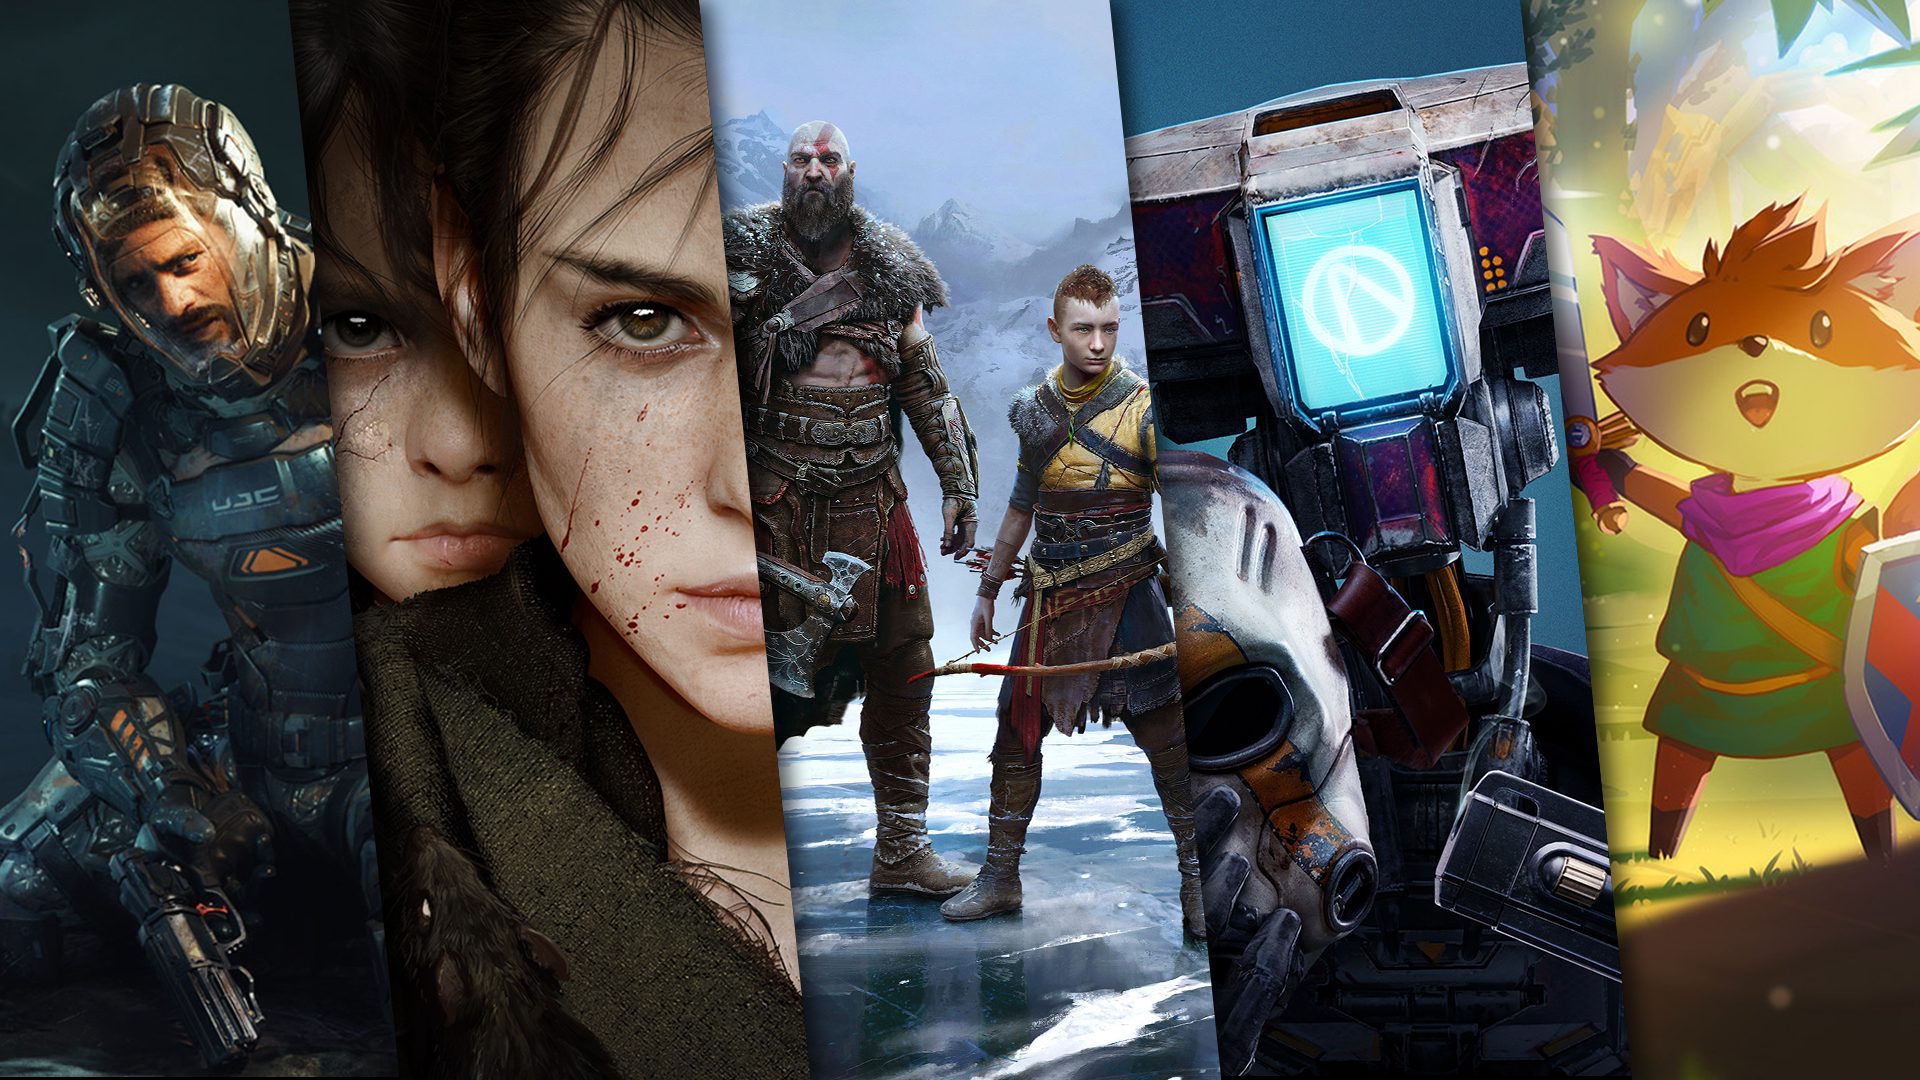 Los mejores juegos que llegarán a PS5 en 2023, ¿cuál esperas con más ganas?